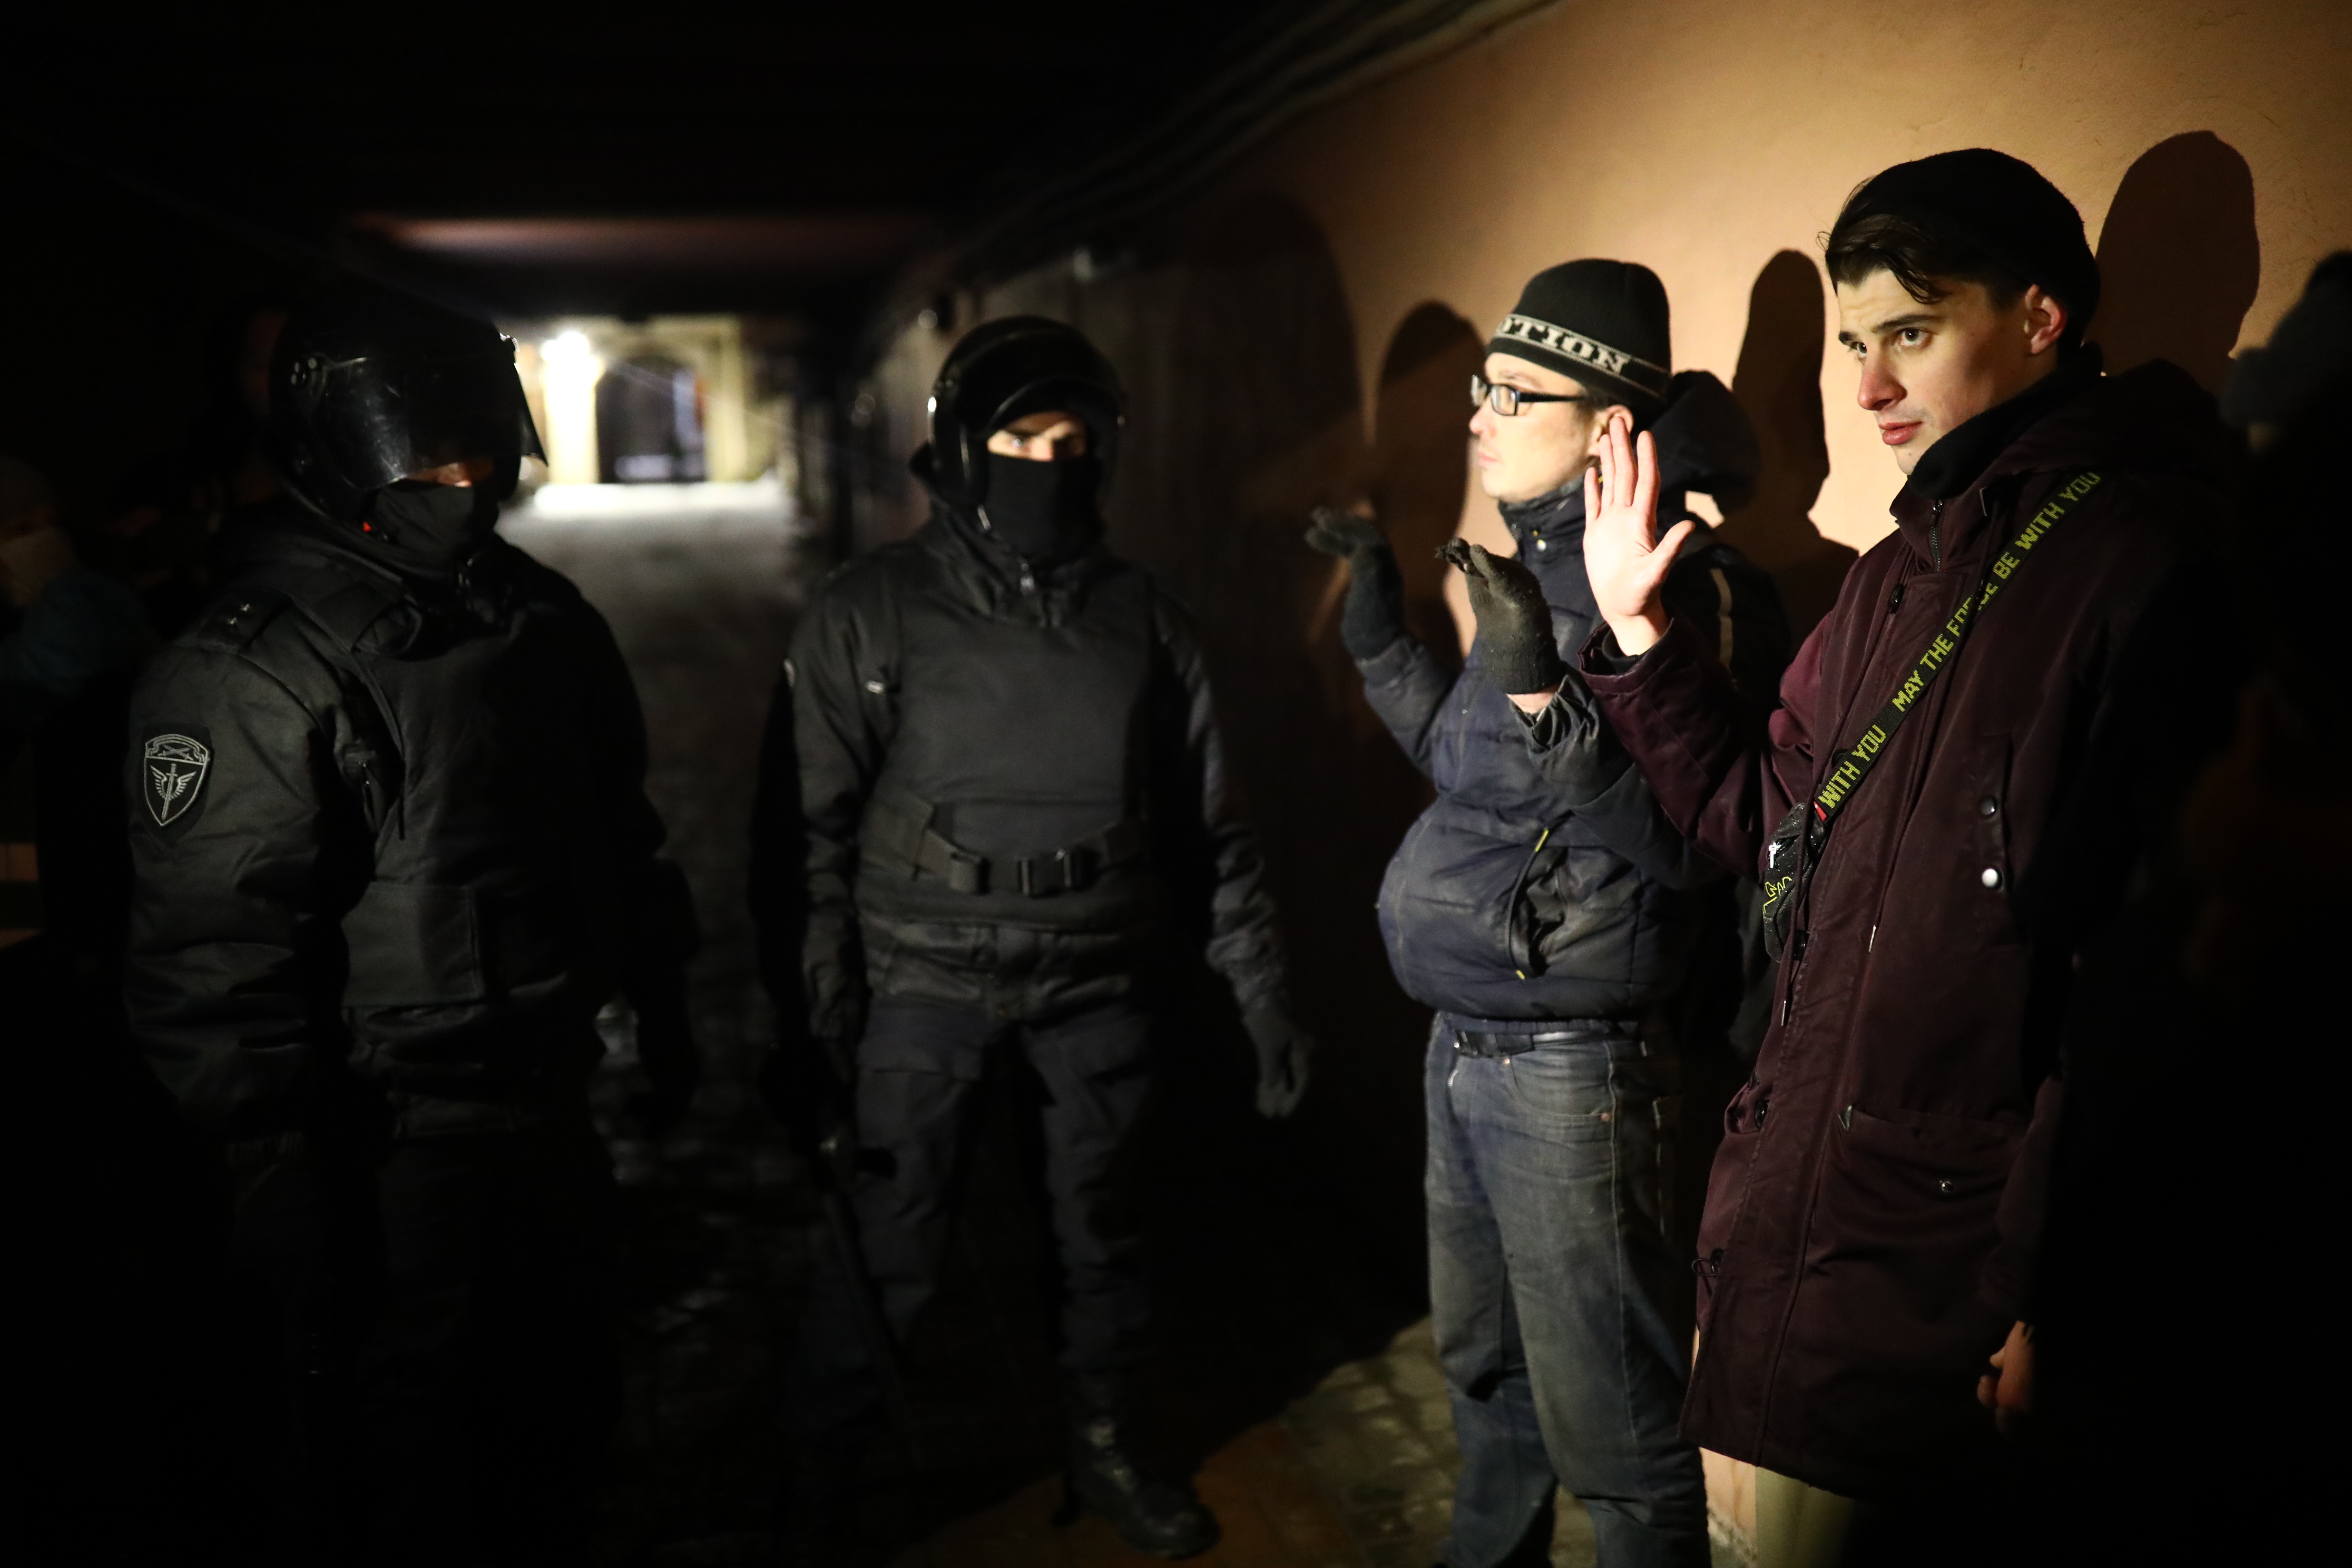 Задержания во дворе в центре Петербурга, 2 января 2021 года / Фото: Давид Френкель, «Медиазона»